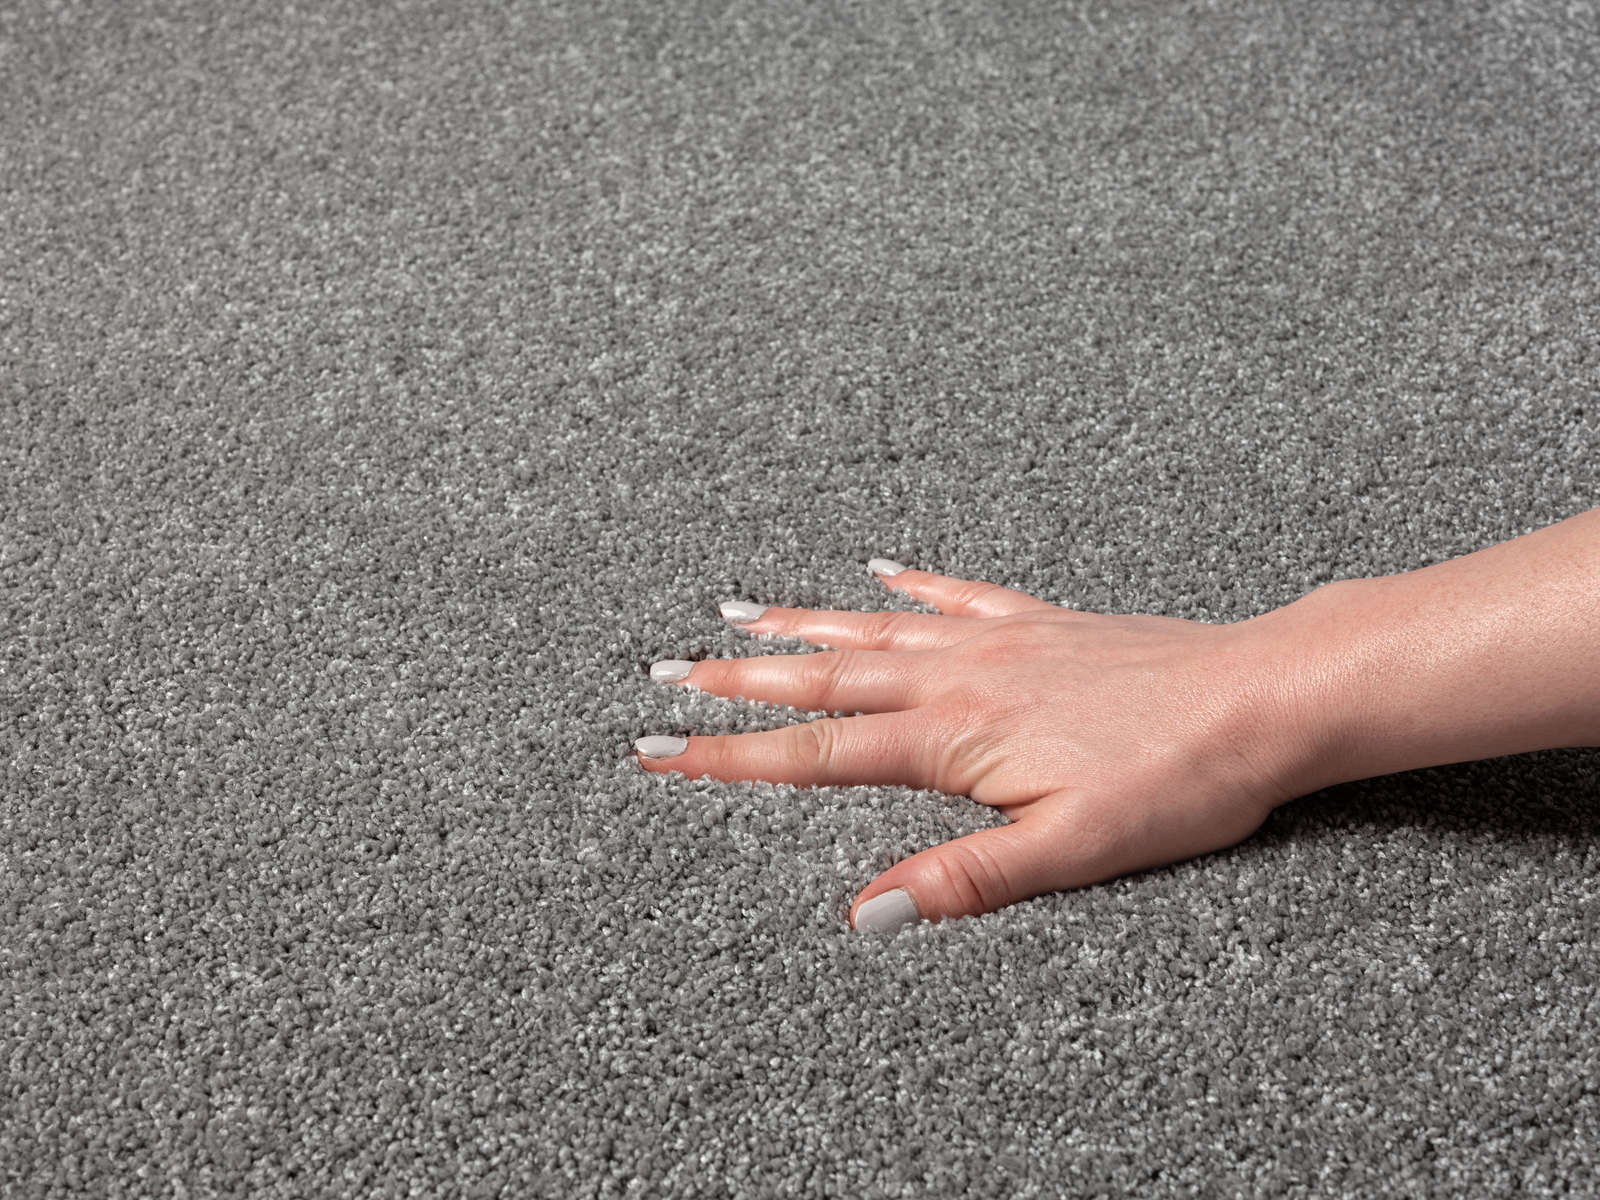             Flauschiger Kurzflor Teppich in Grau – 230 x 160 cm
        